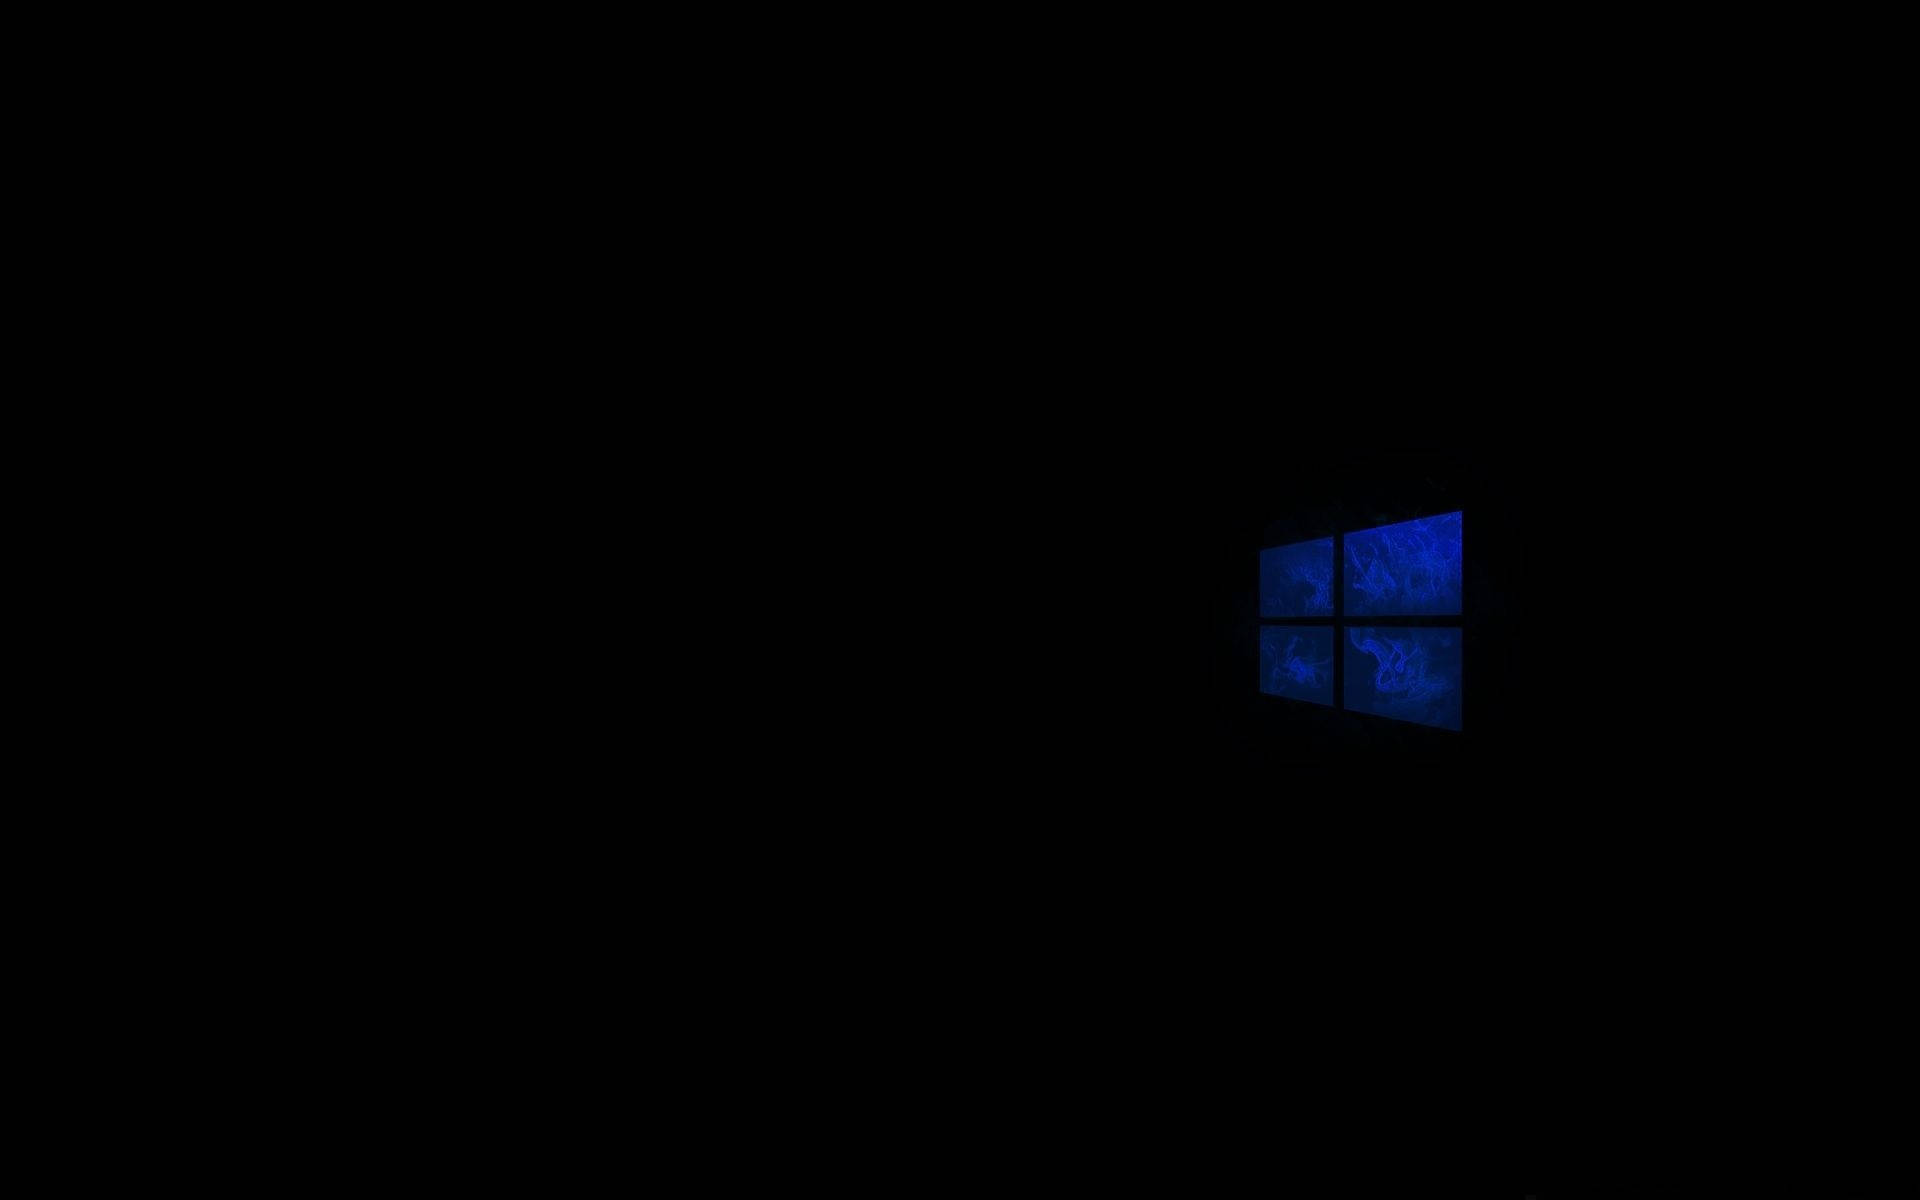 Svart Windows 10 Hd Wallpaper